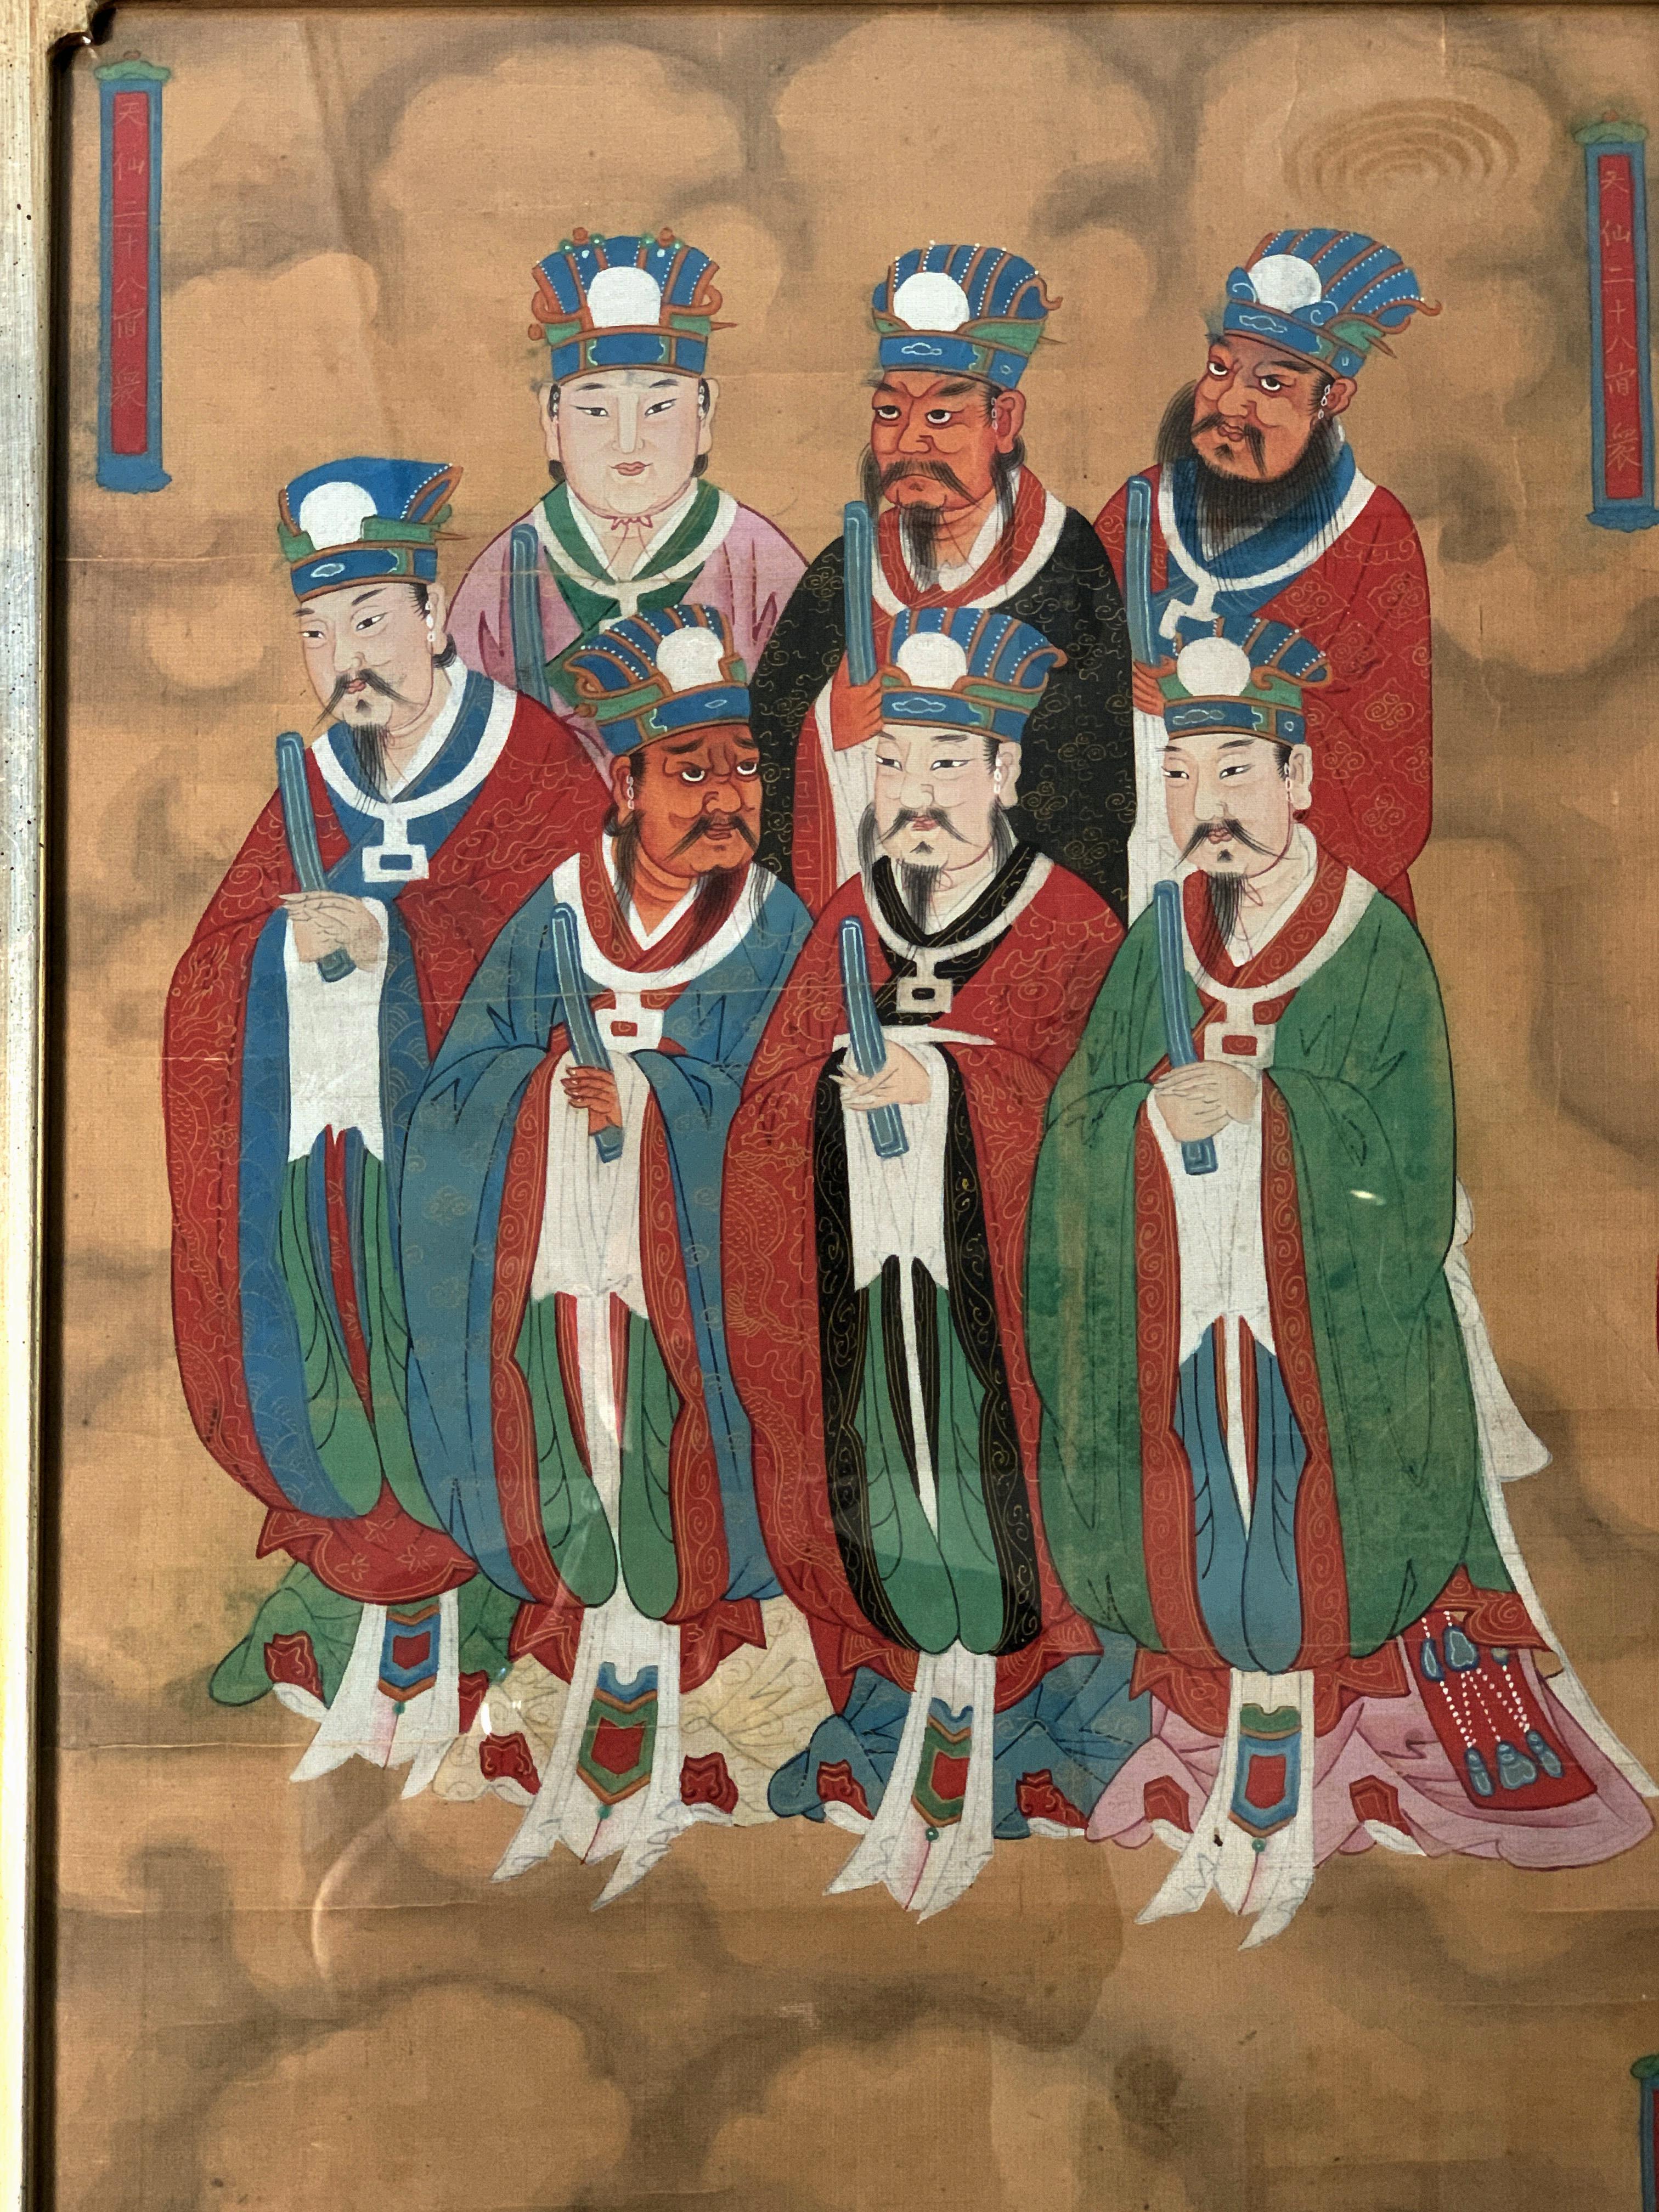 Importante peinture chinoise du XVIIe siècle, début de la dynastie Qing, intitulée 